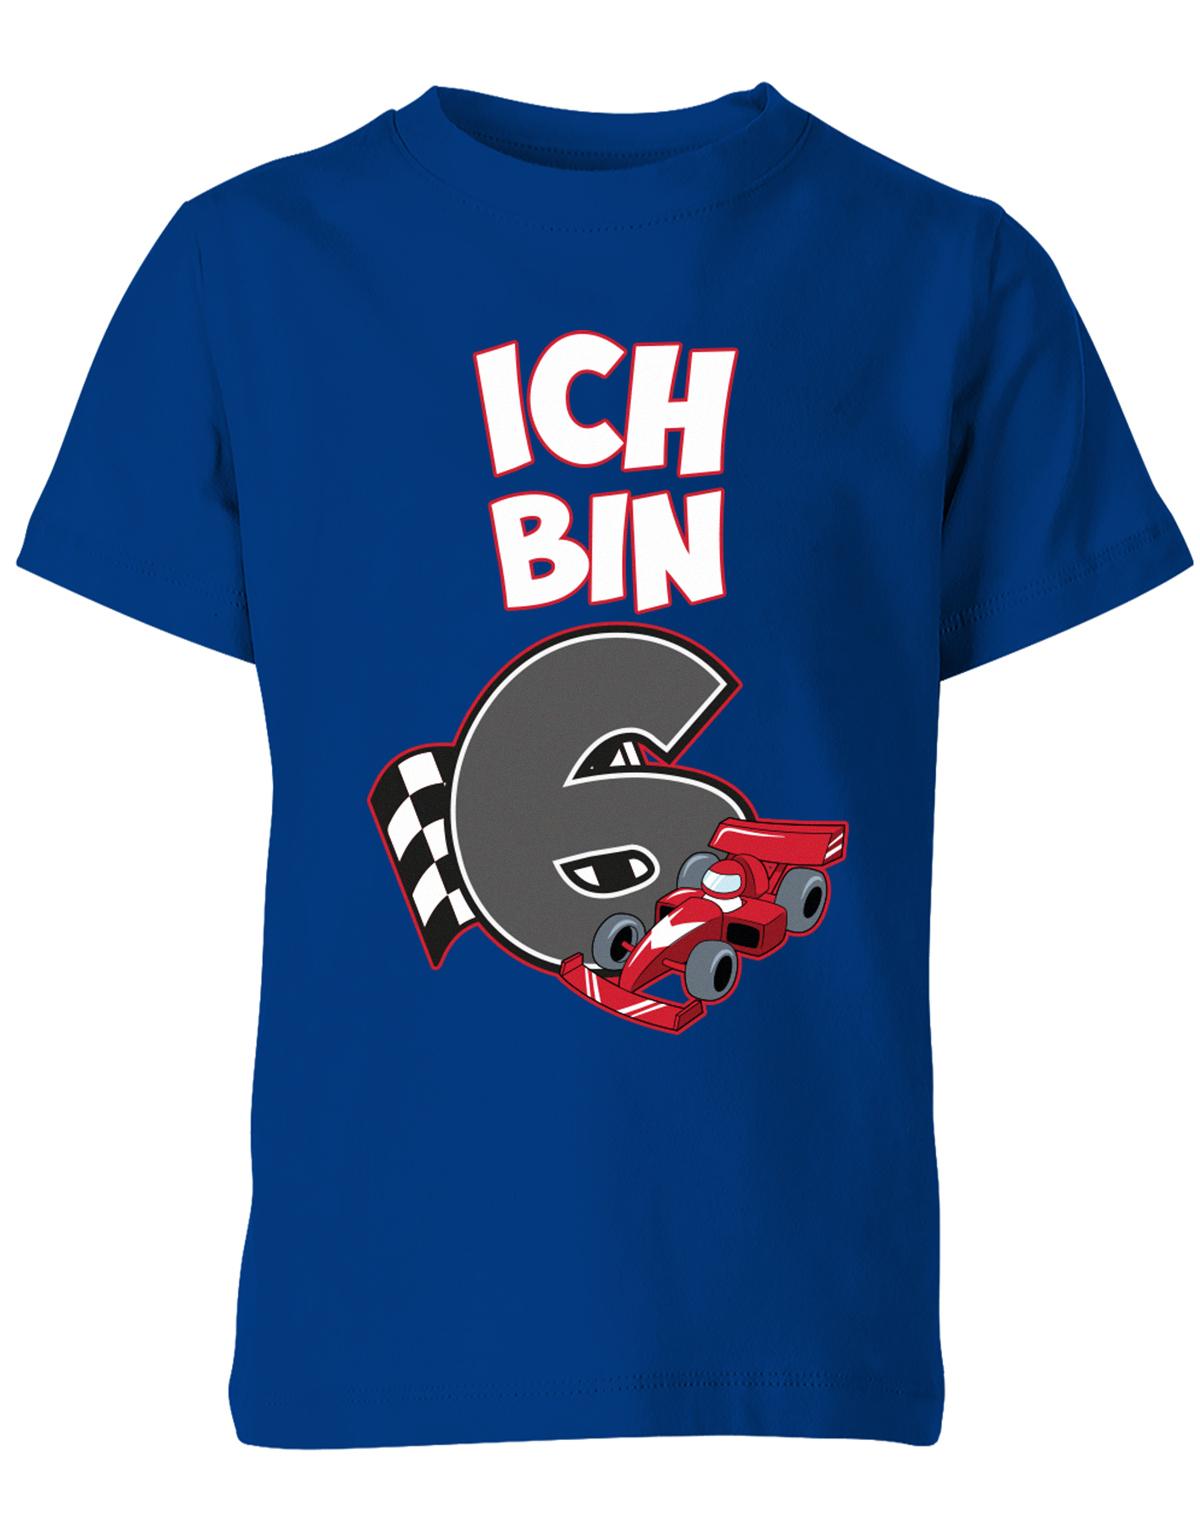 ich-bin-6-autorennen-rennwagen-geburtstag-rennfahrer-kinder-shirt-royalblau